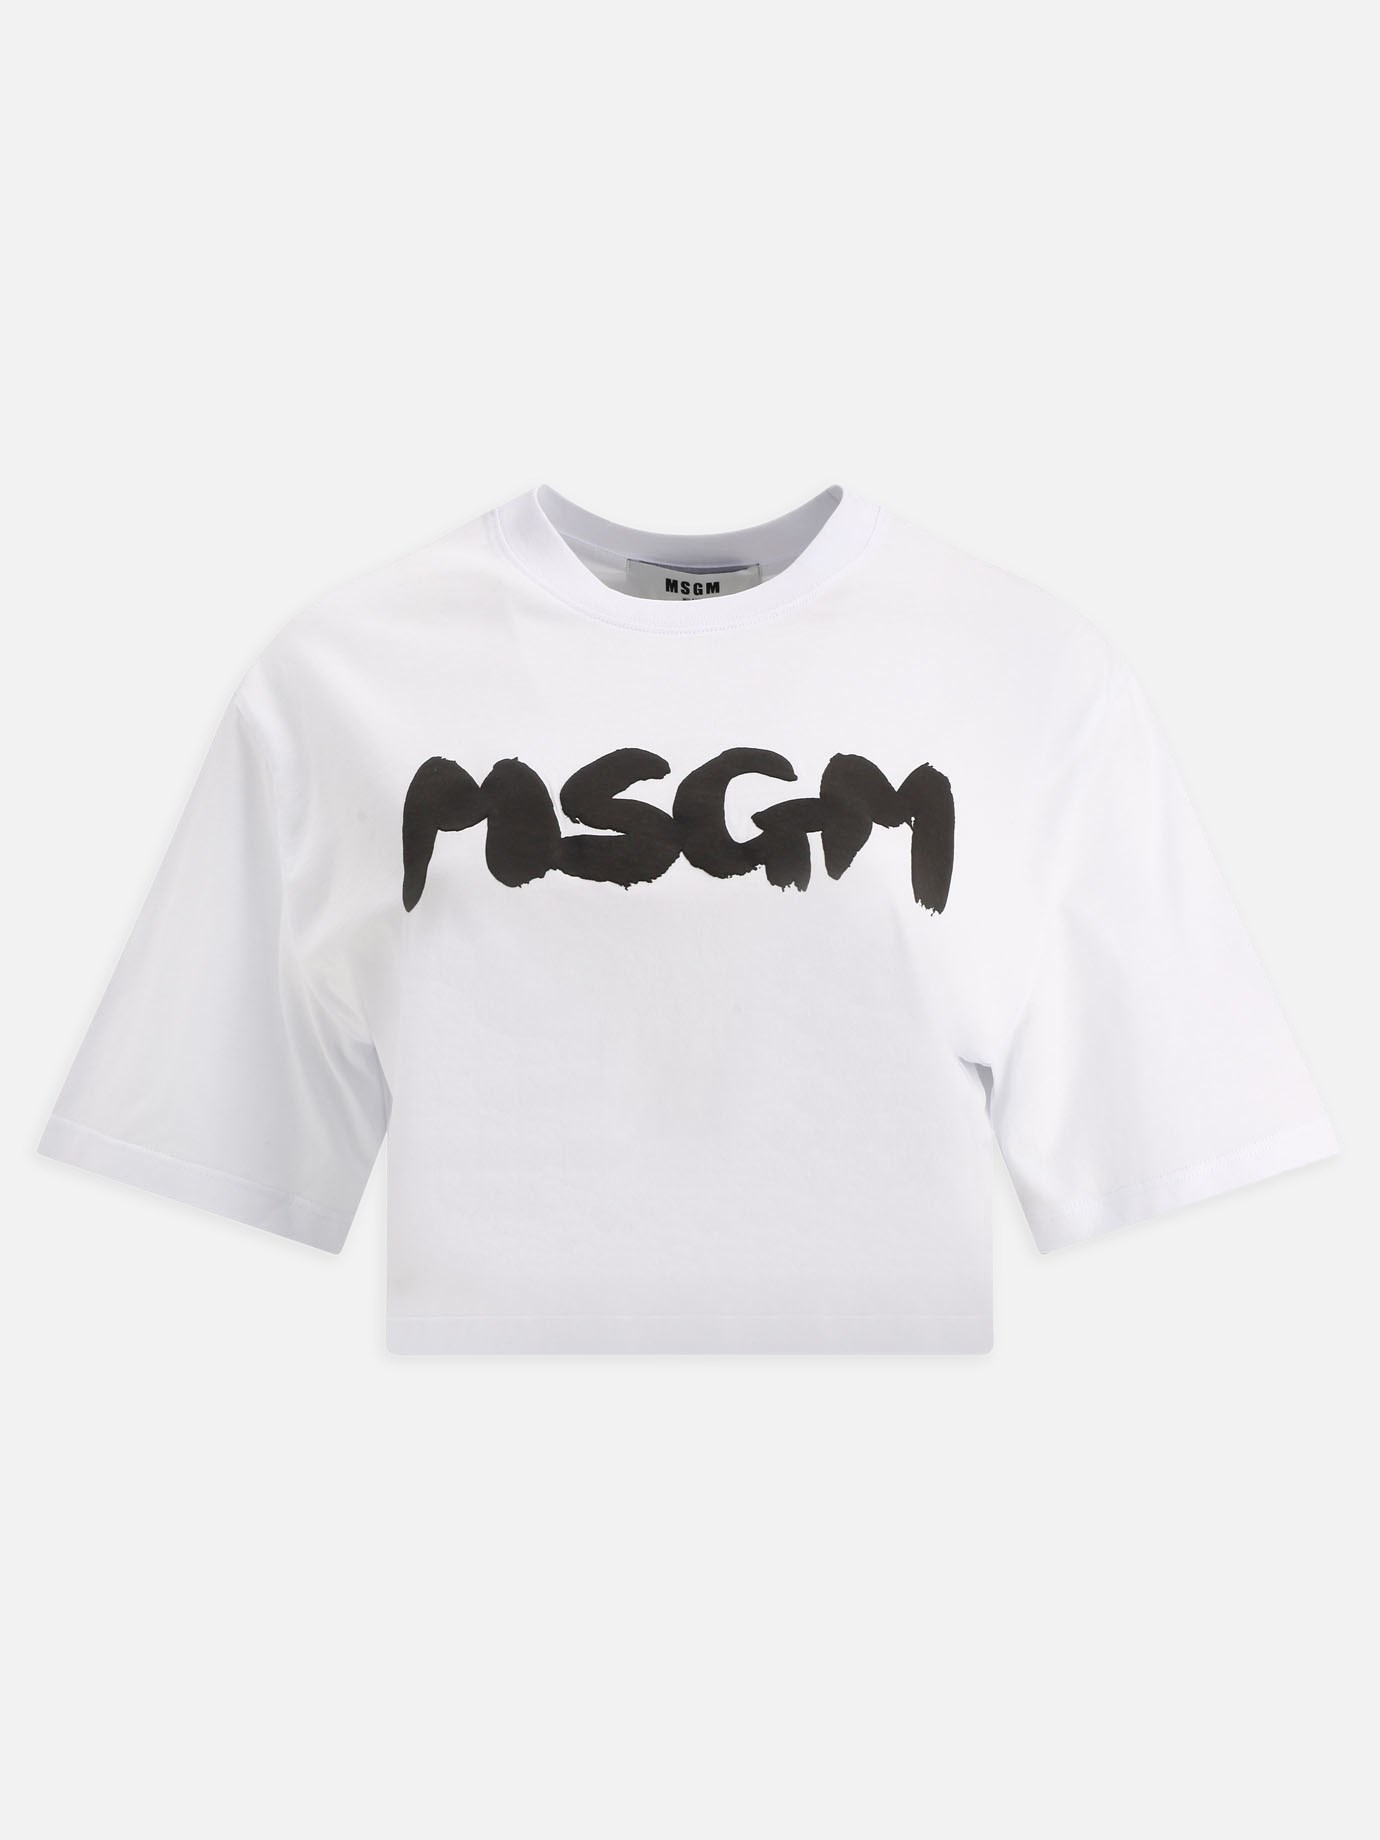  Msgm  cropped t-shirtby Msgm - 0